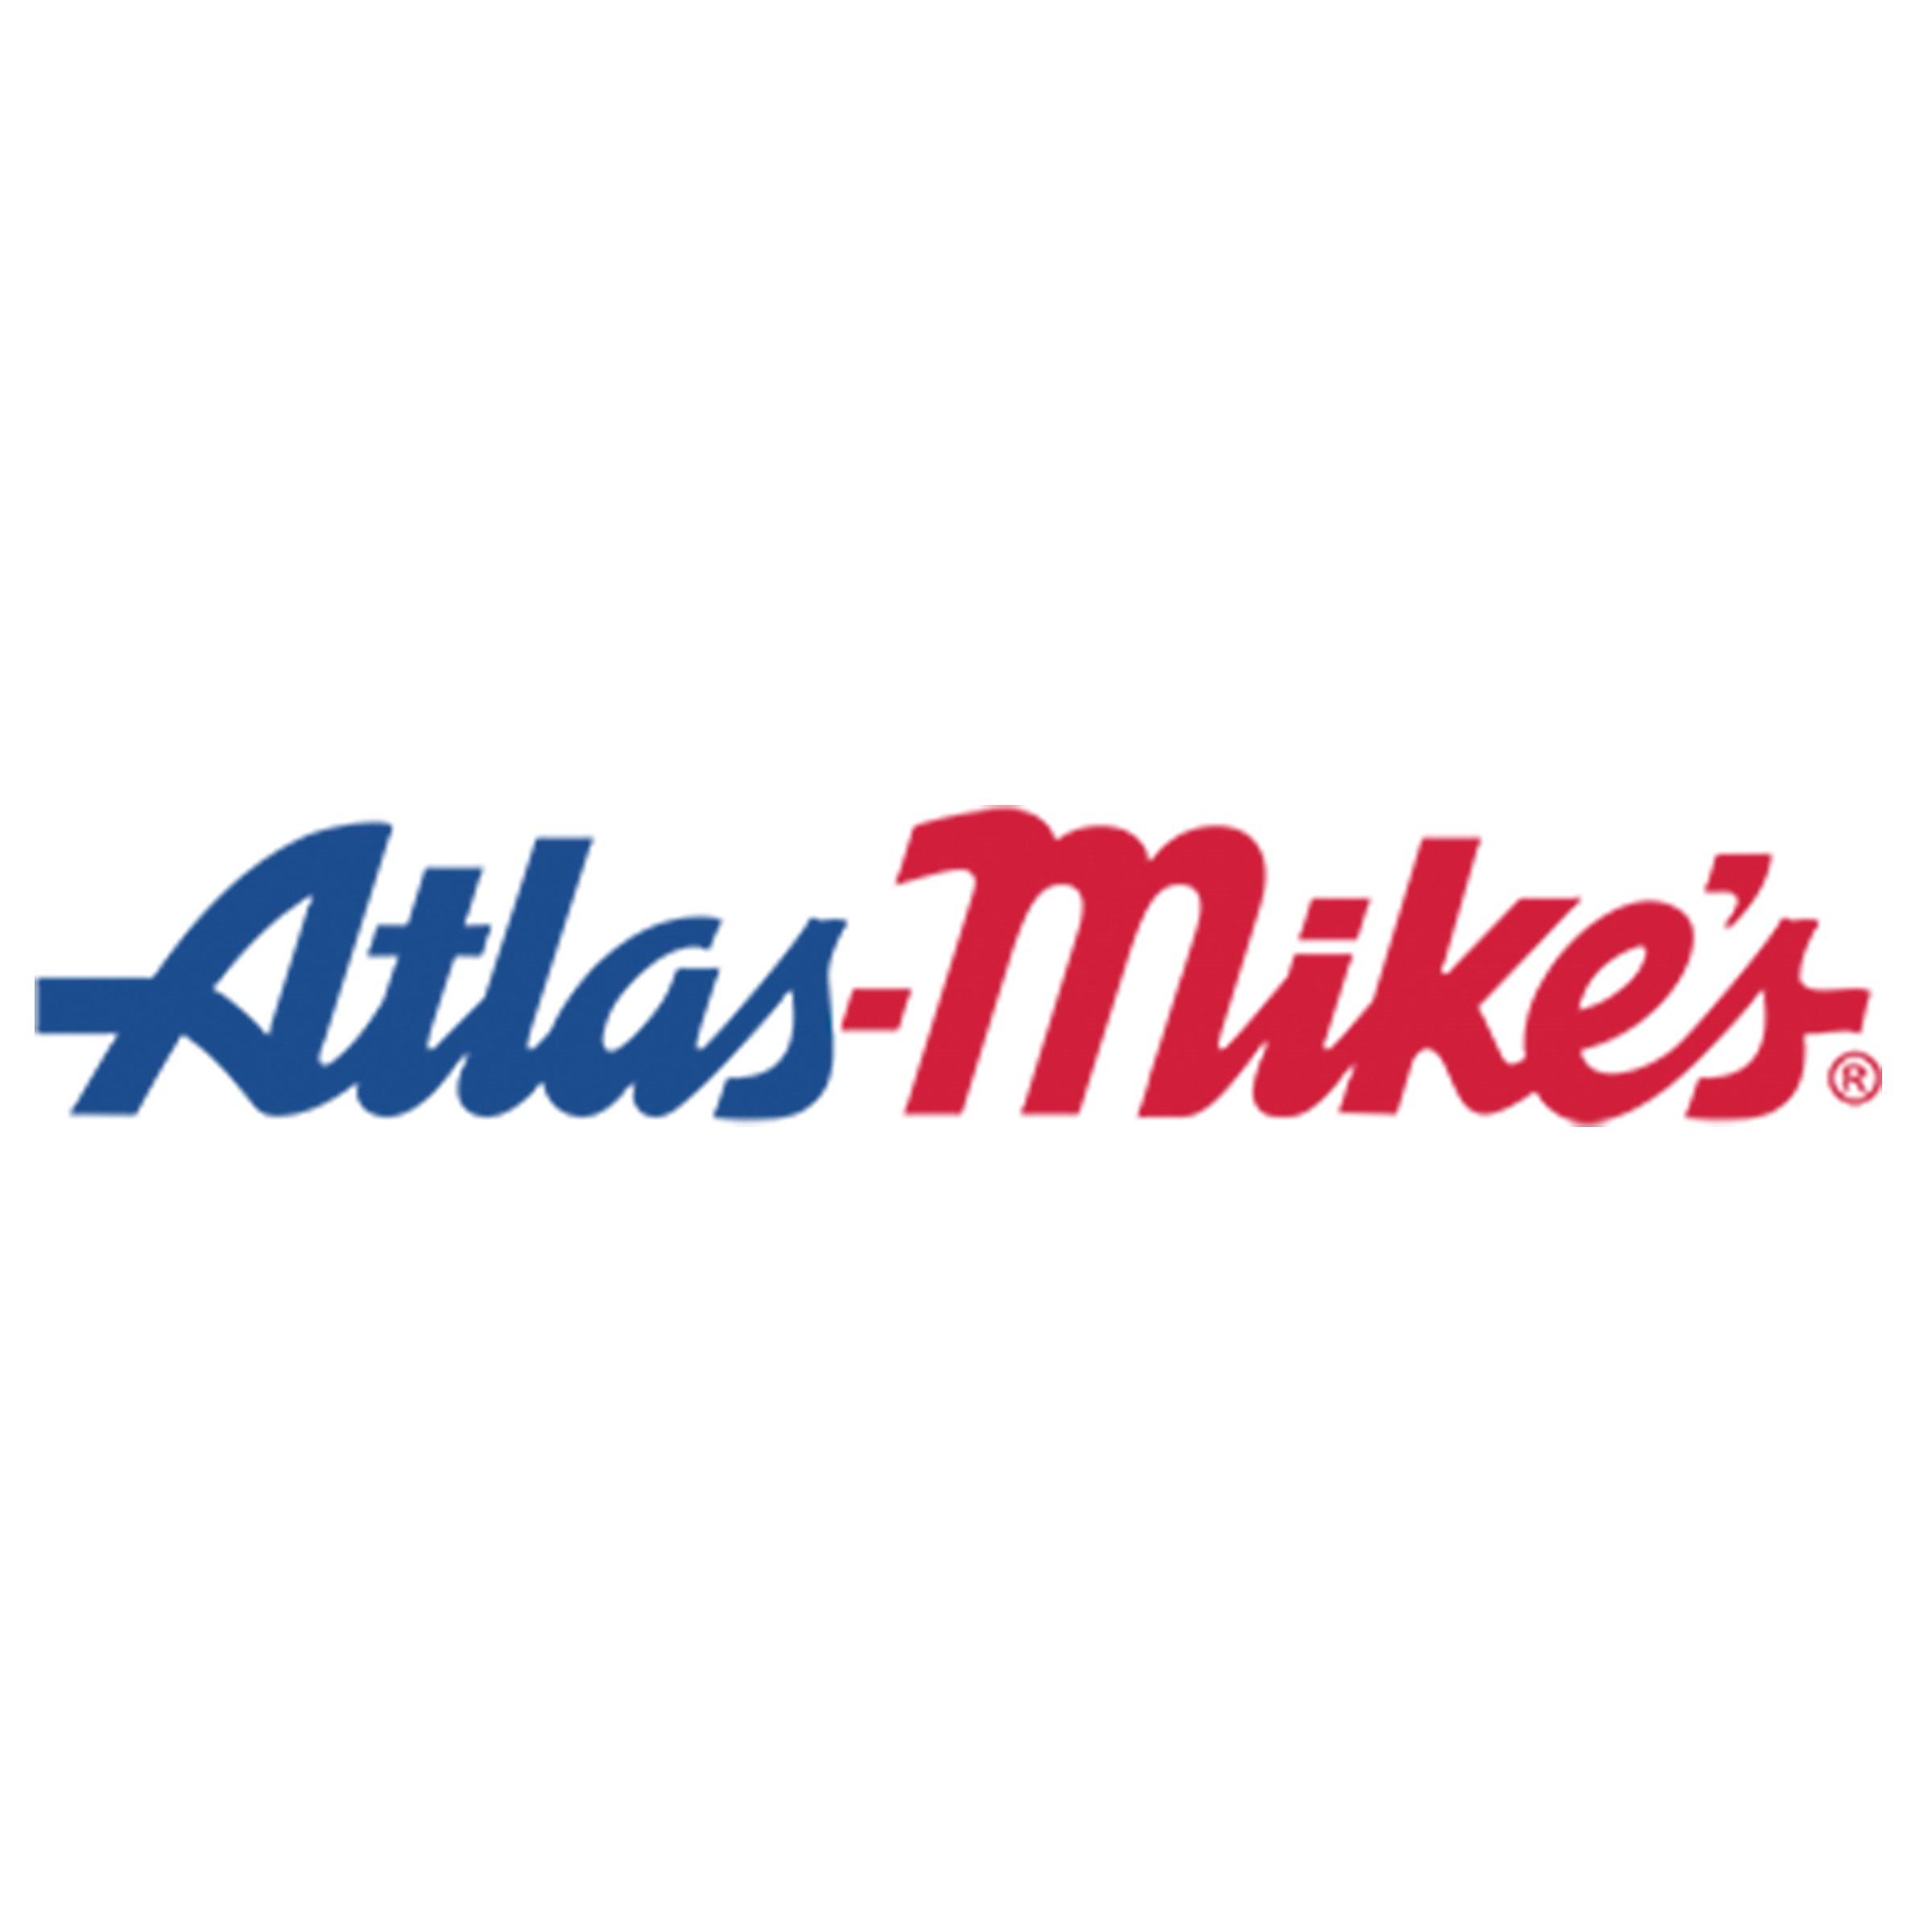 A_Atlas-Mikes